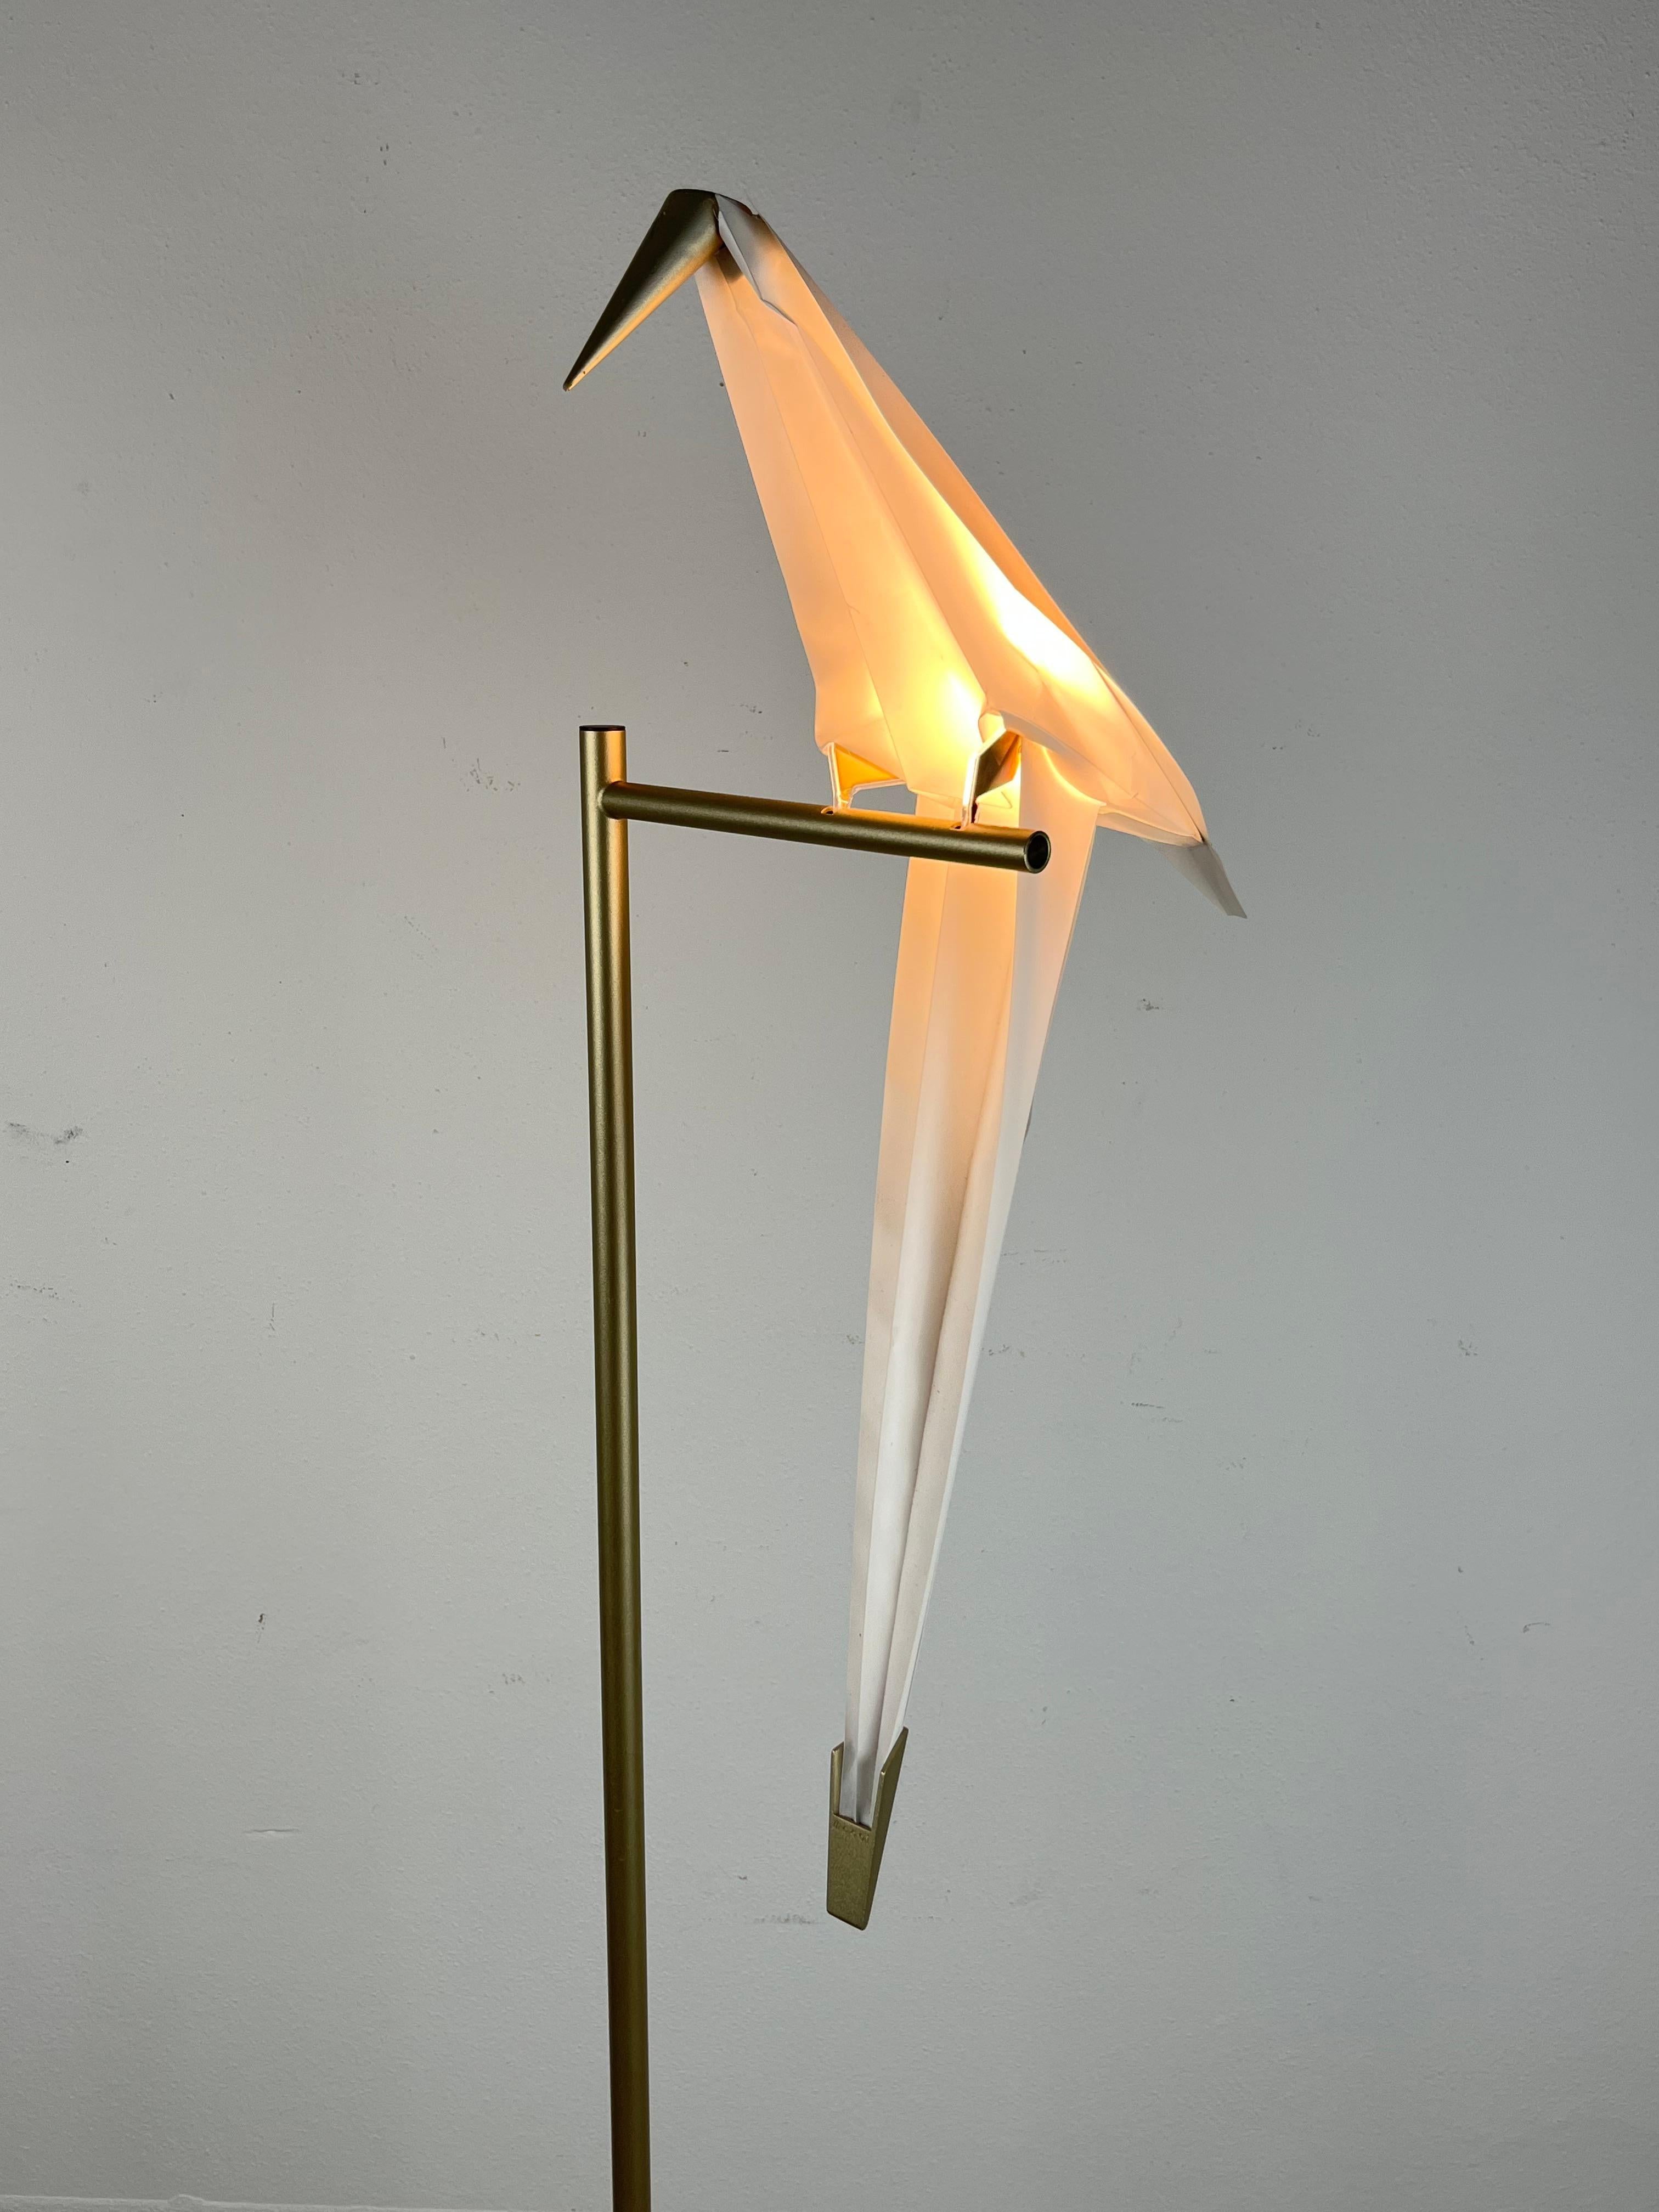 Moooi Perch Light Bird Lampadaire LED par Umut Yamac, Pays-Bas, 2017
 Structure en acier et laiton avec un oiseau en polycarbonate (PC) et papier synthétique, la lampe Moooi se caractérise par une forme d'oiseau en origami, terminée par un bec et